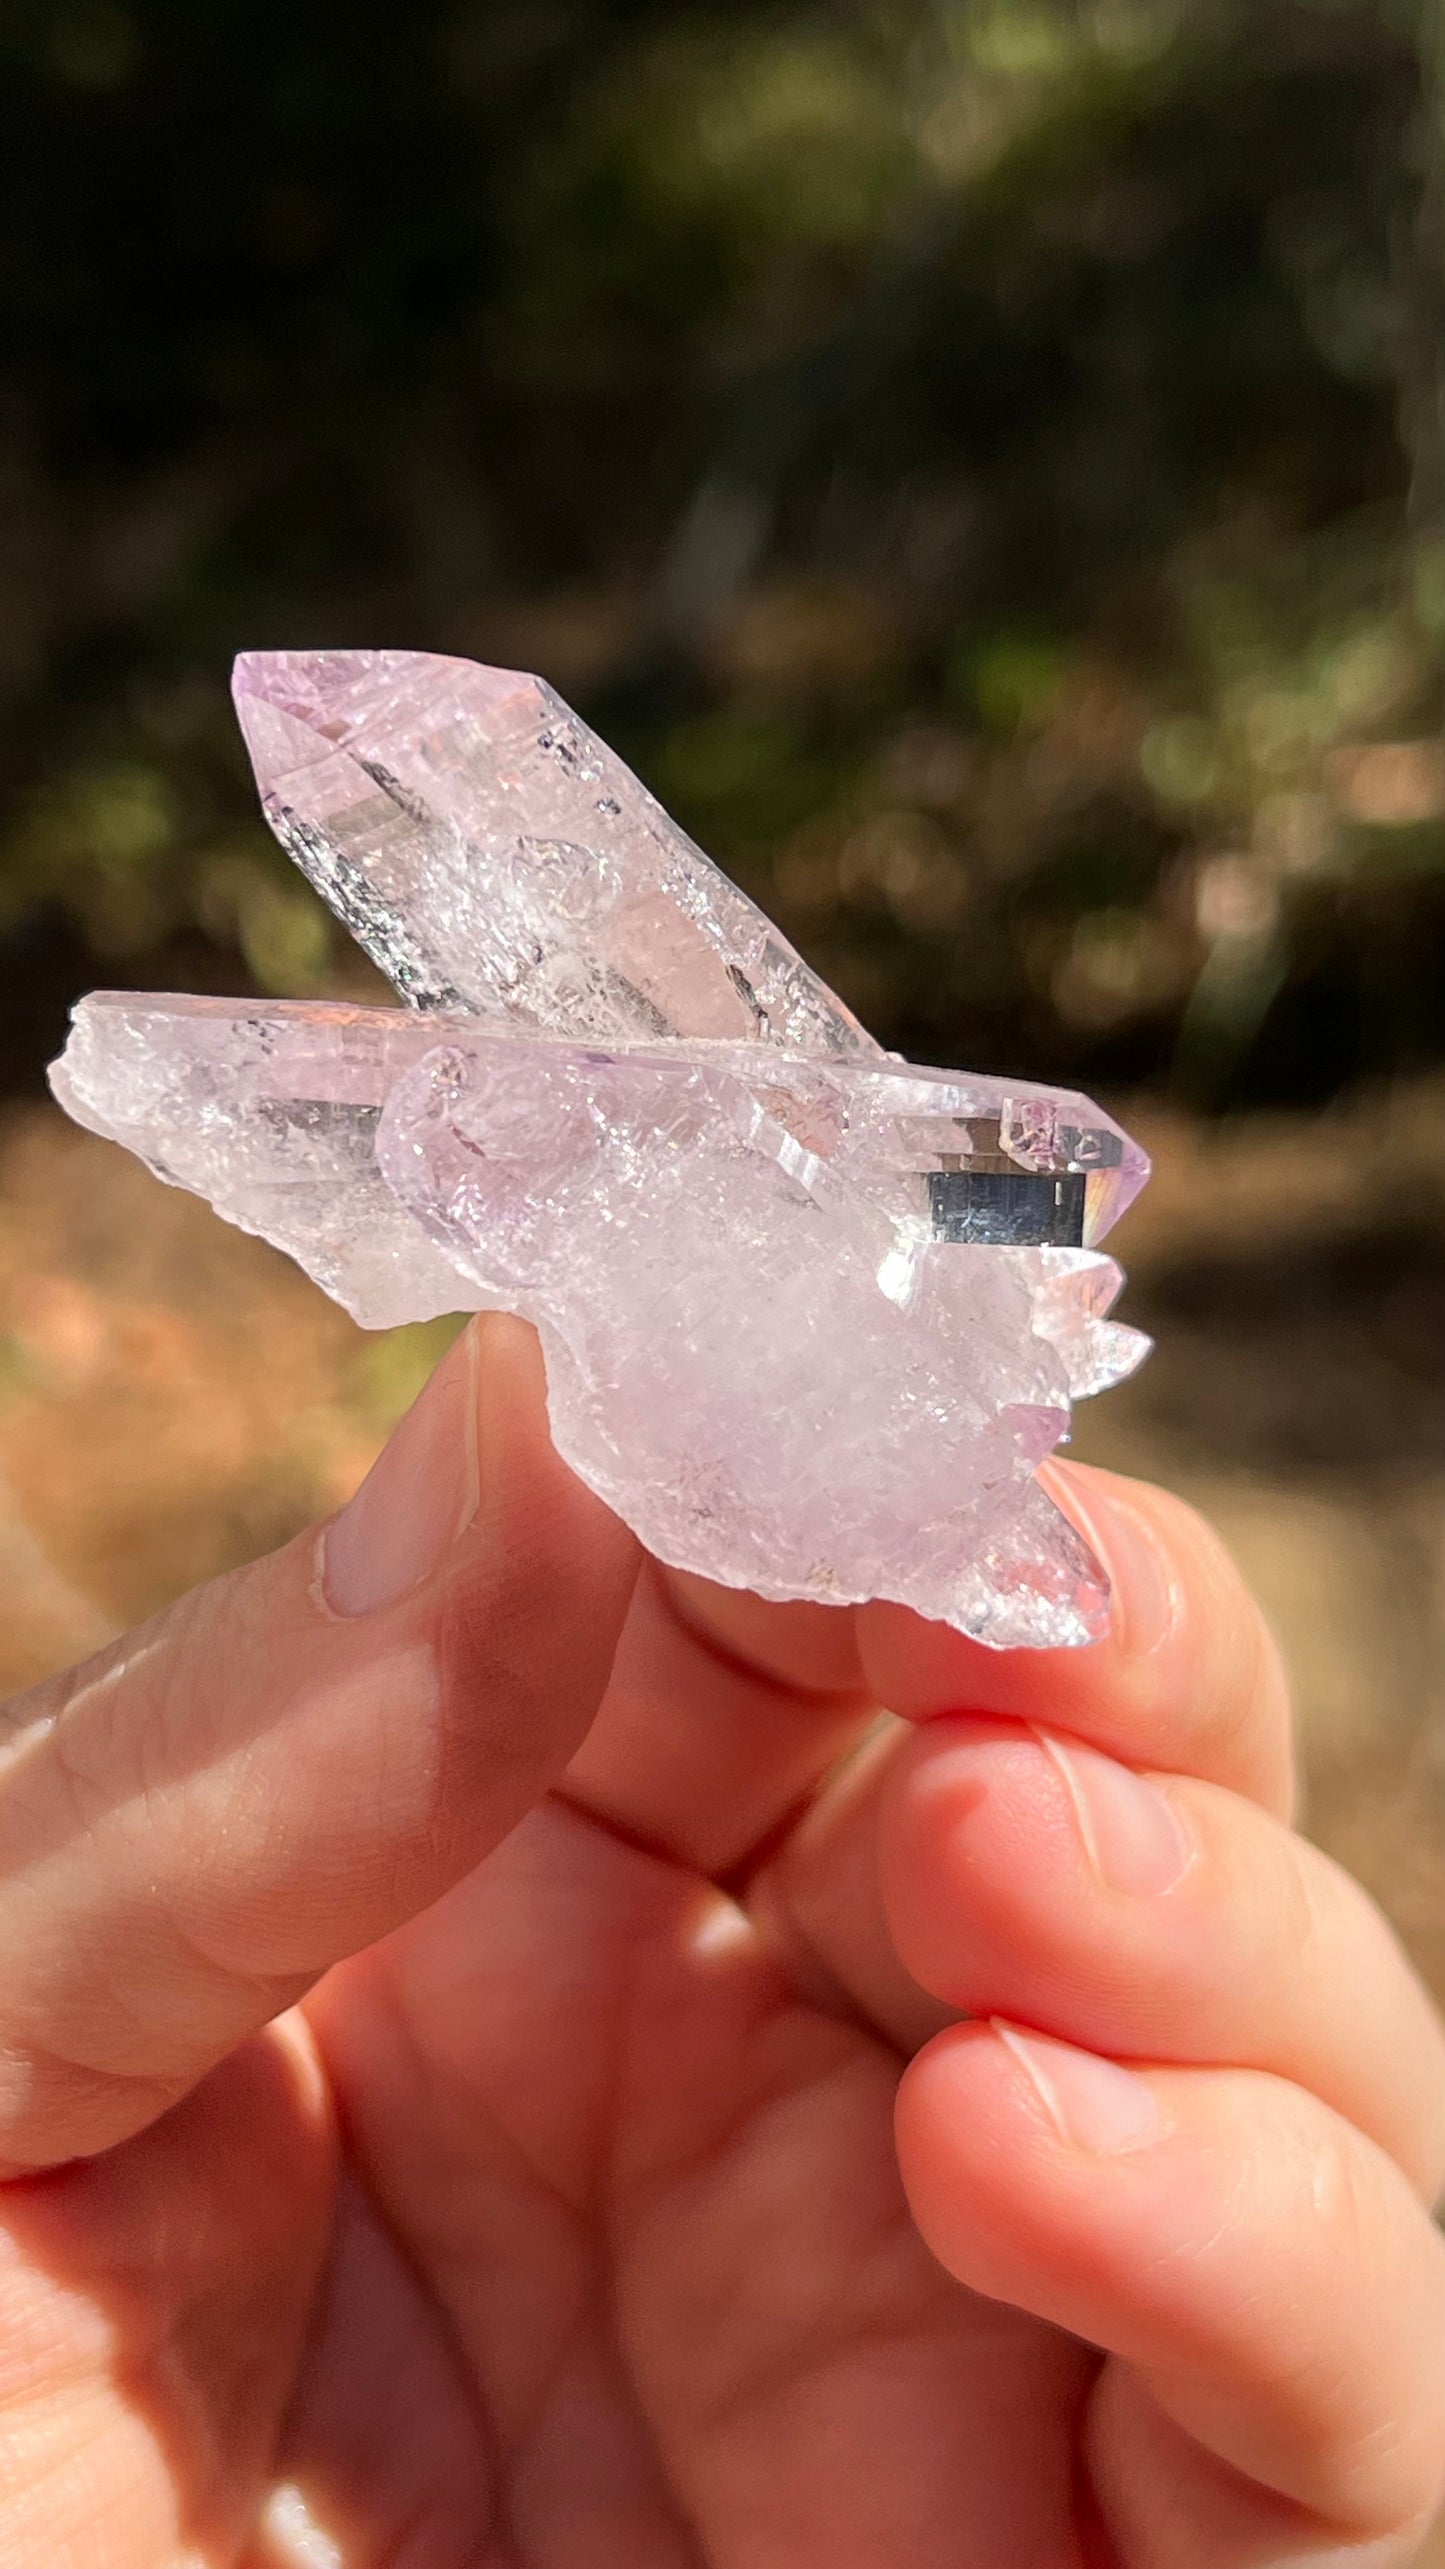 Amethyst Crystal, Veracruz Mexico